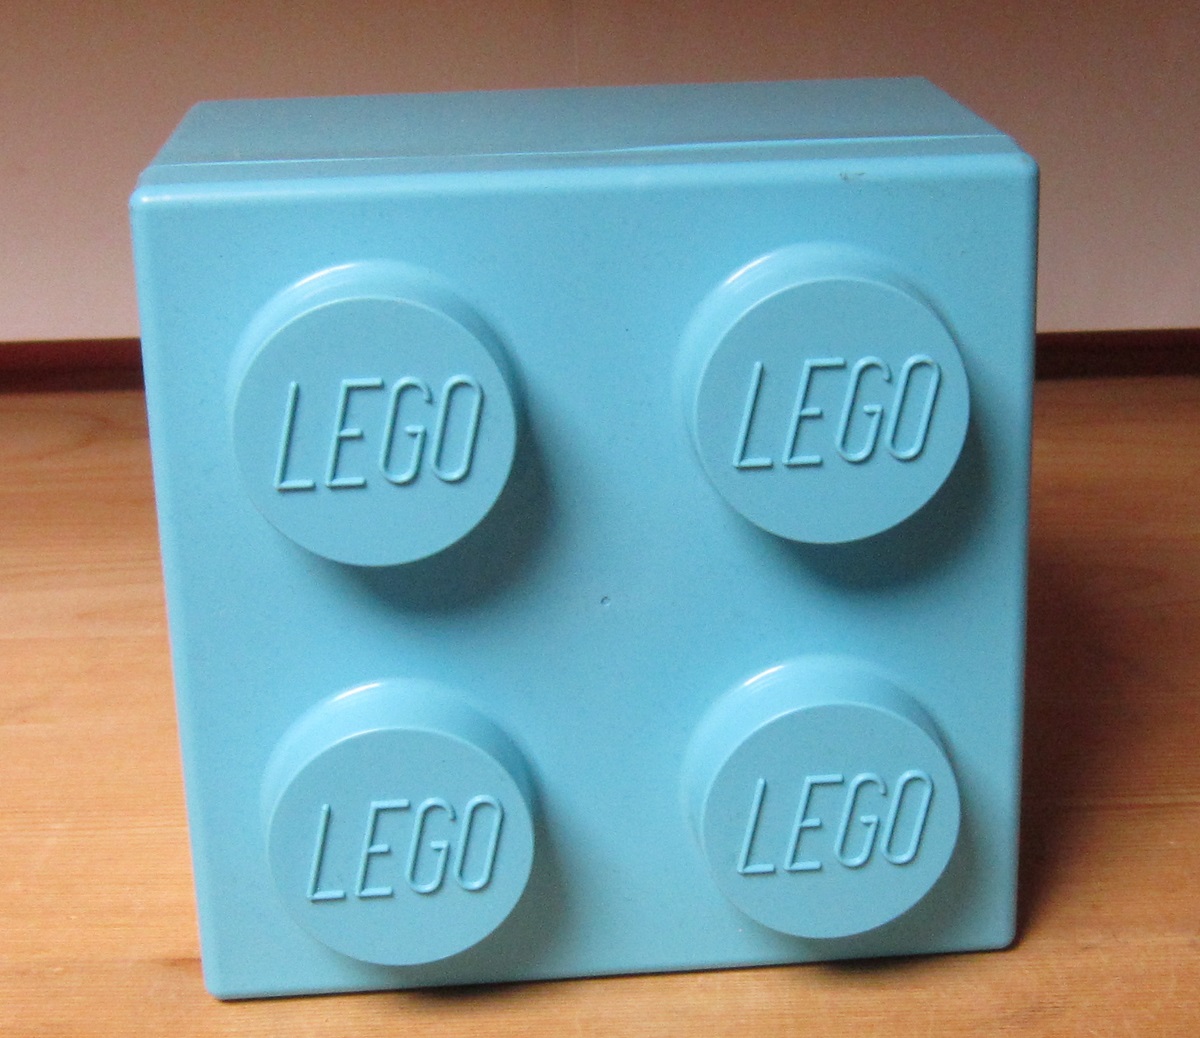 0060 Lego madkasse